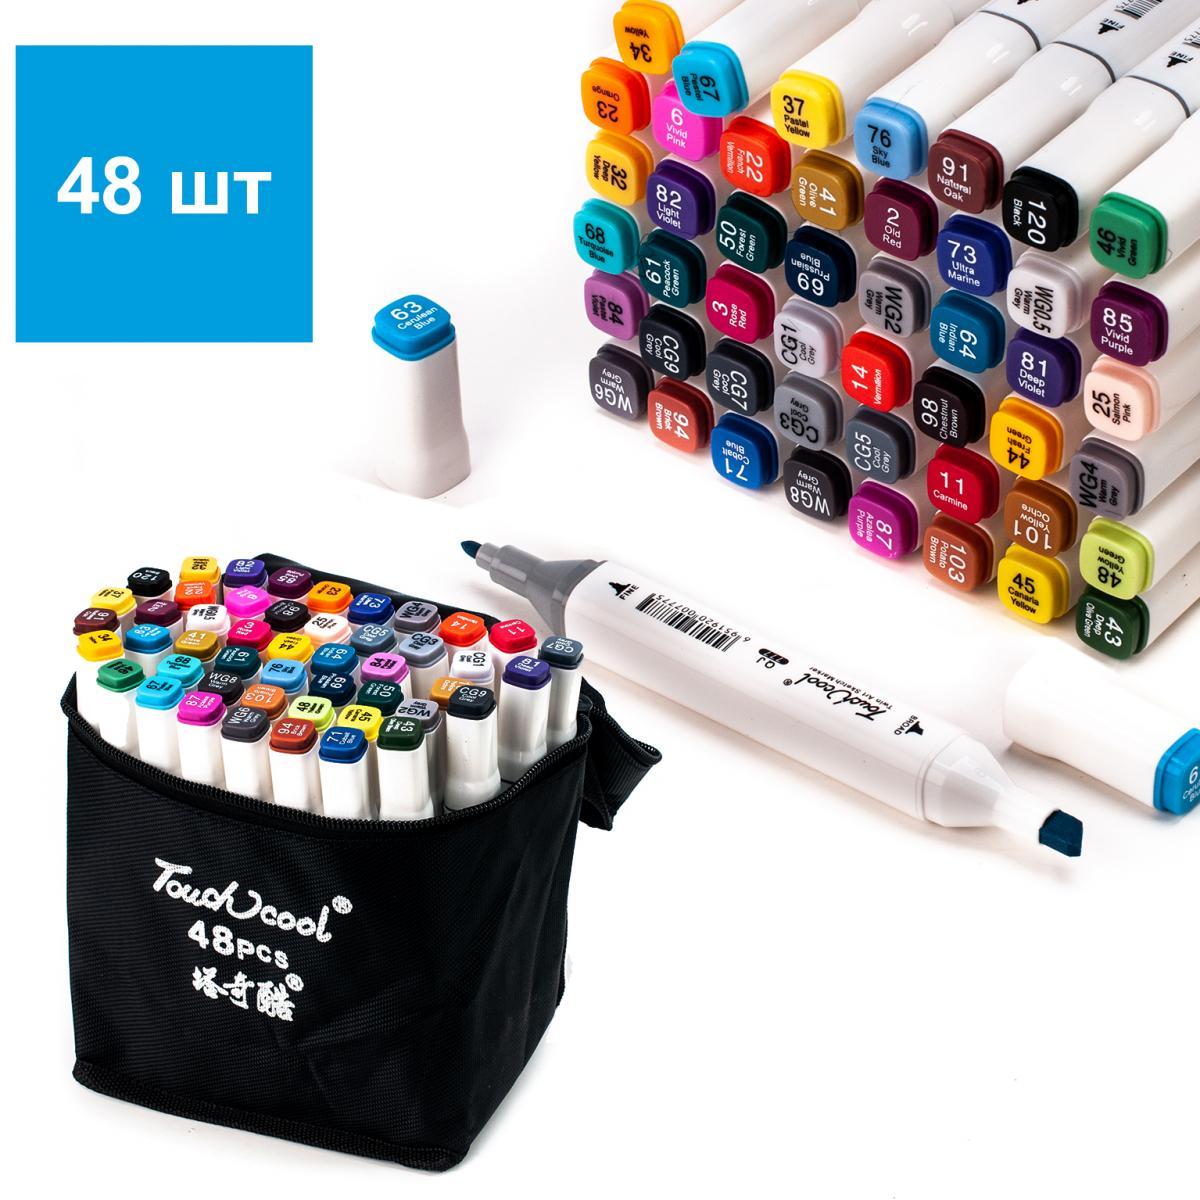 Спиртовые маркеры набор. Touch cool маркеры 48 шт. Sketch Marker набор 48 штук. Touch Sketch маркеры. Маркеры 48 штук Bestdler.